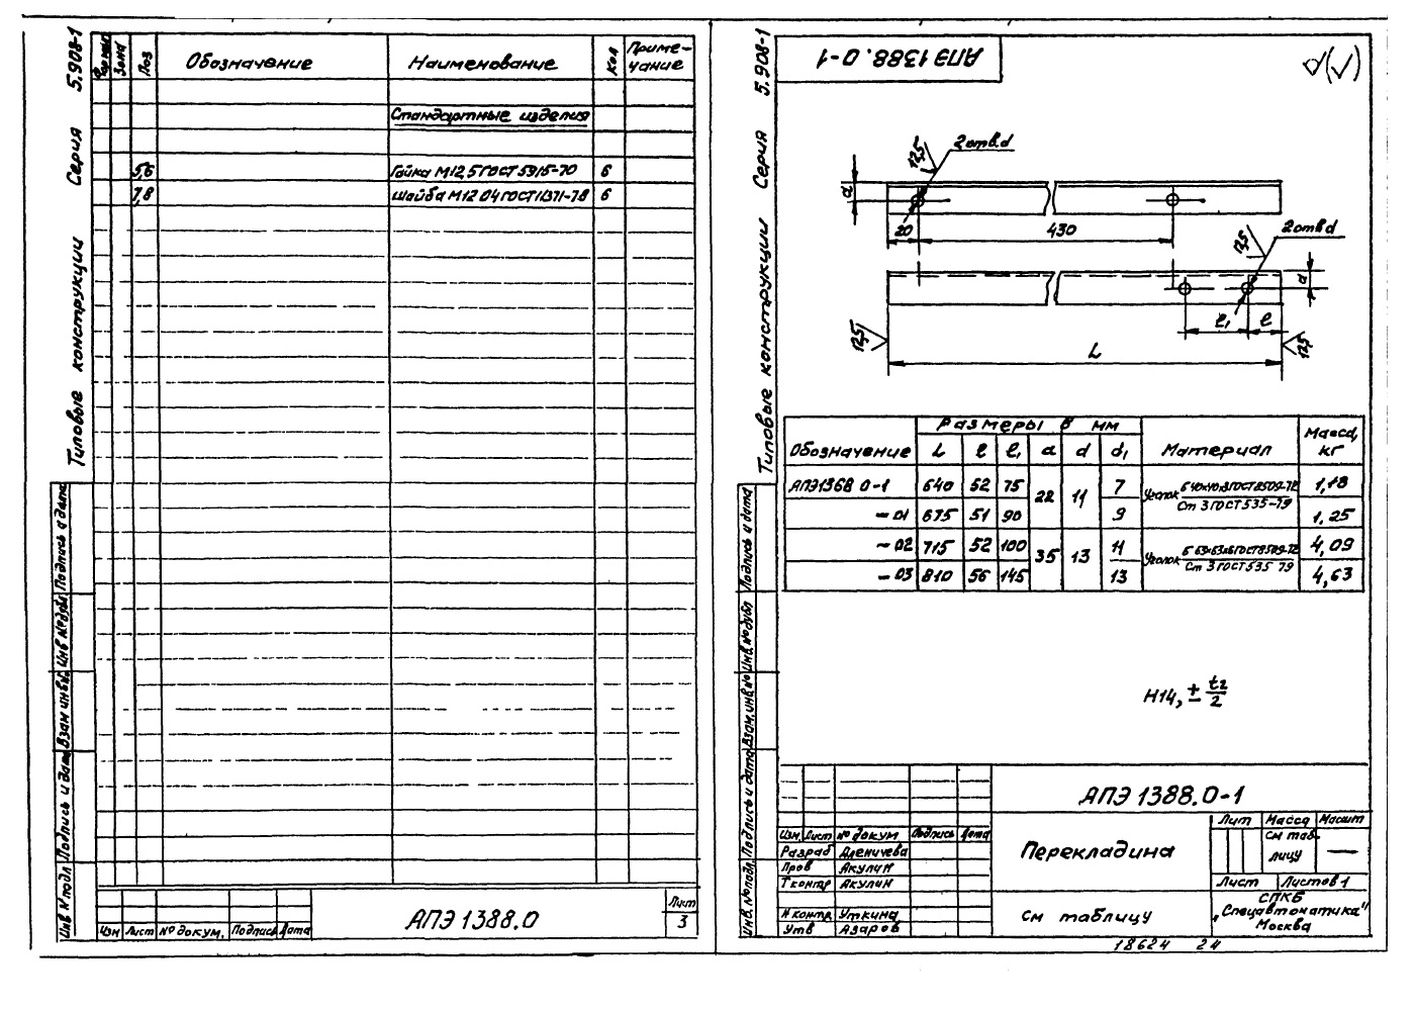 Опора для крепления двух труб Дн18...89 к железобетонной колонне АПЭ 1388.0 серия 5.908-1 стр.3